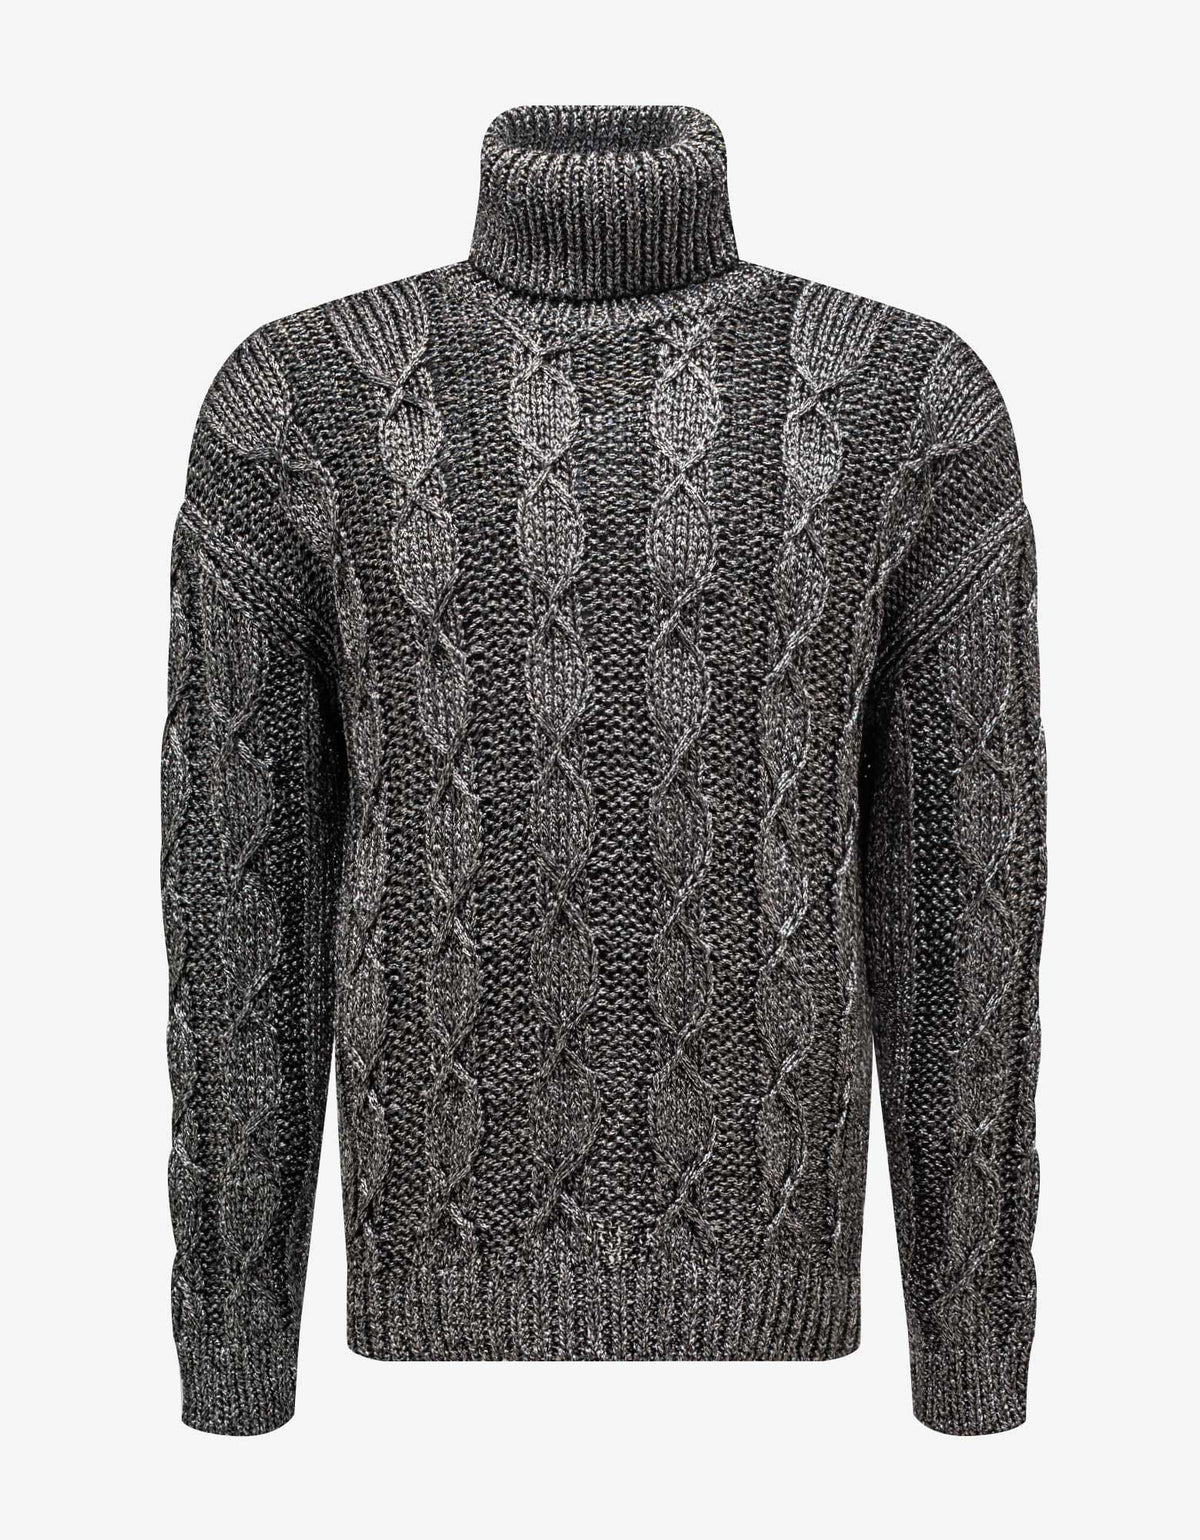 Saint Laurent Grey Turtleneck Sweater